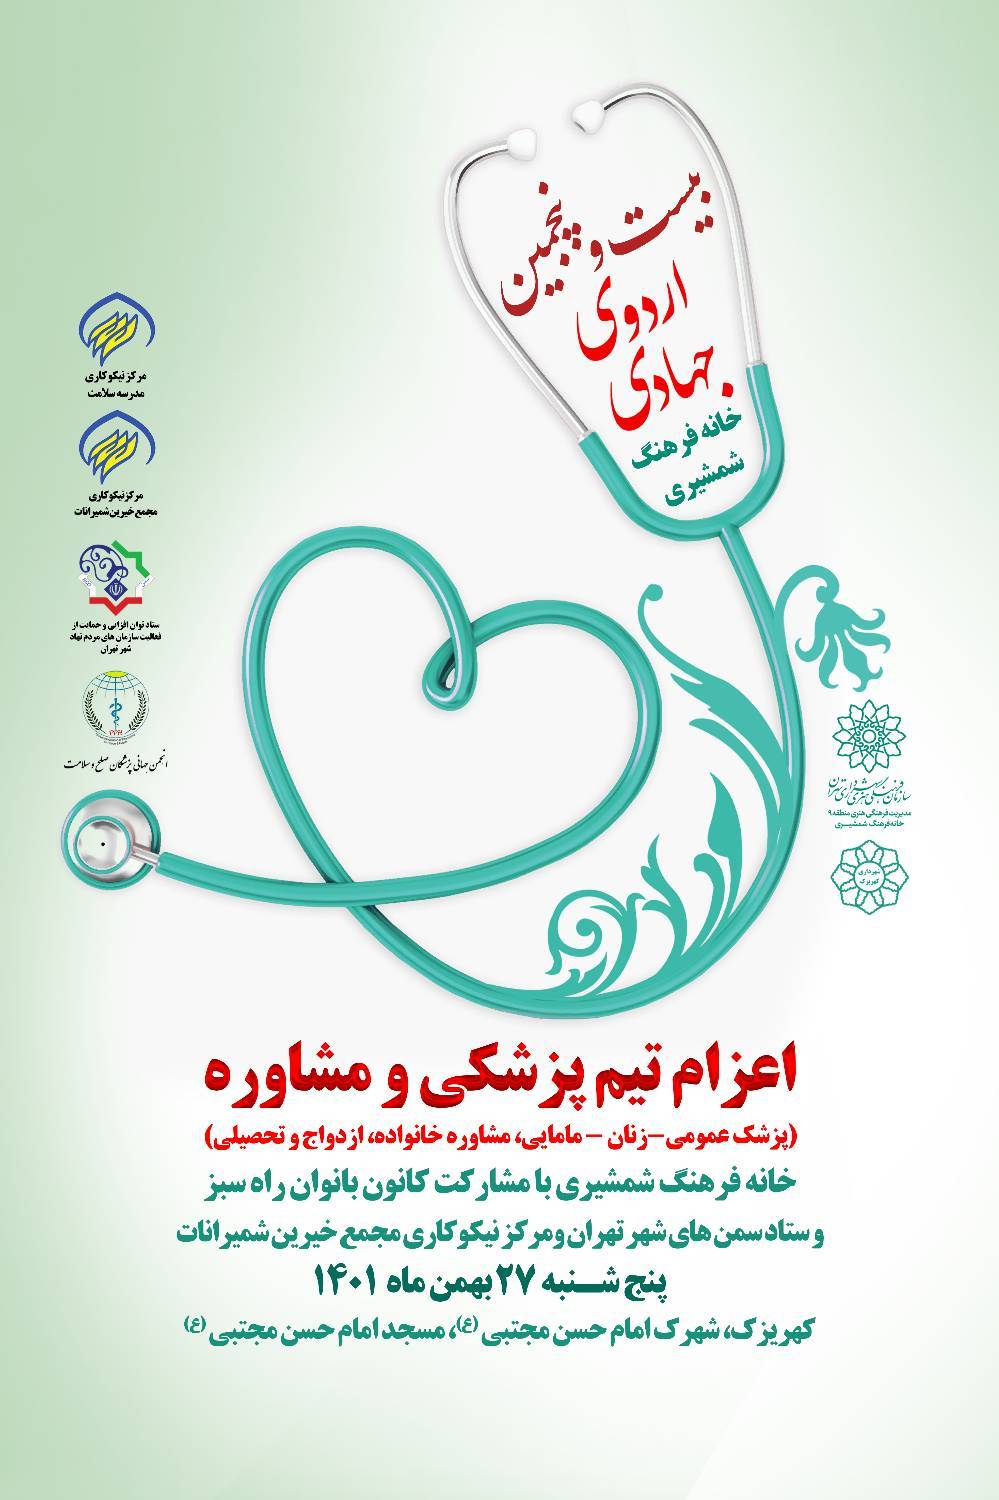 بیست و پنجمین اردوی جهادی ، اعزام تیم پزشکی به کهریزک